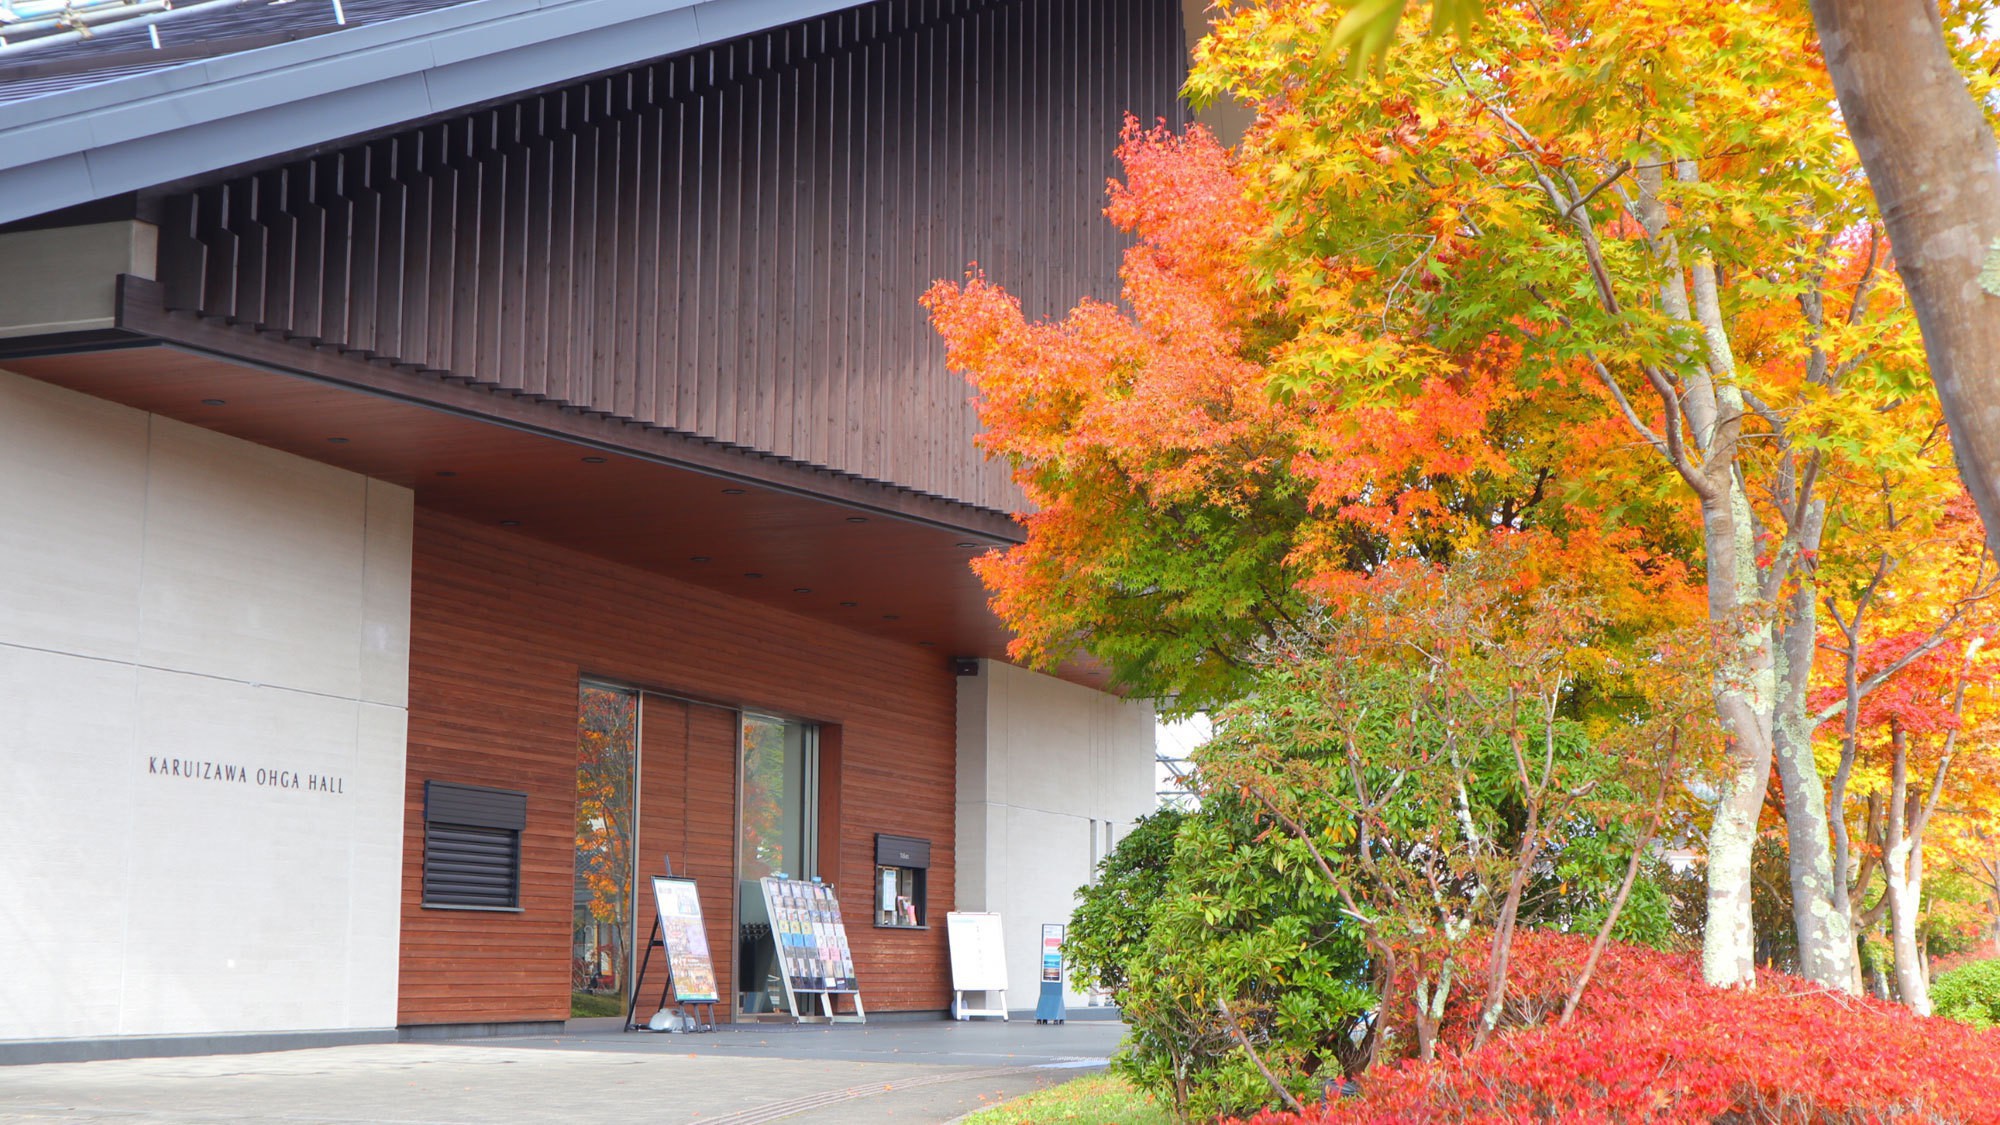 軽井沢大賀ホール／真赤な紅葉が見事。軽井沢らしい街の深みと木のぬくもりを感じます。散策もおすすめ。